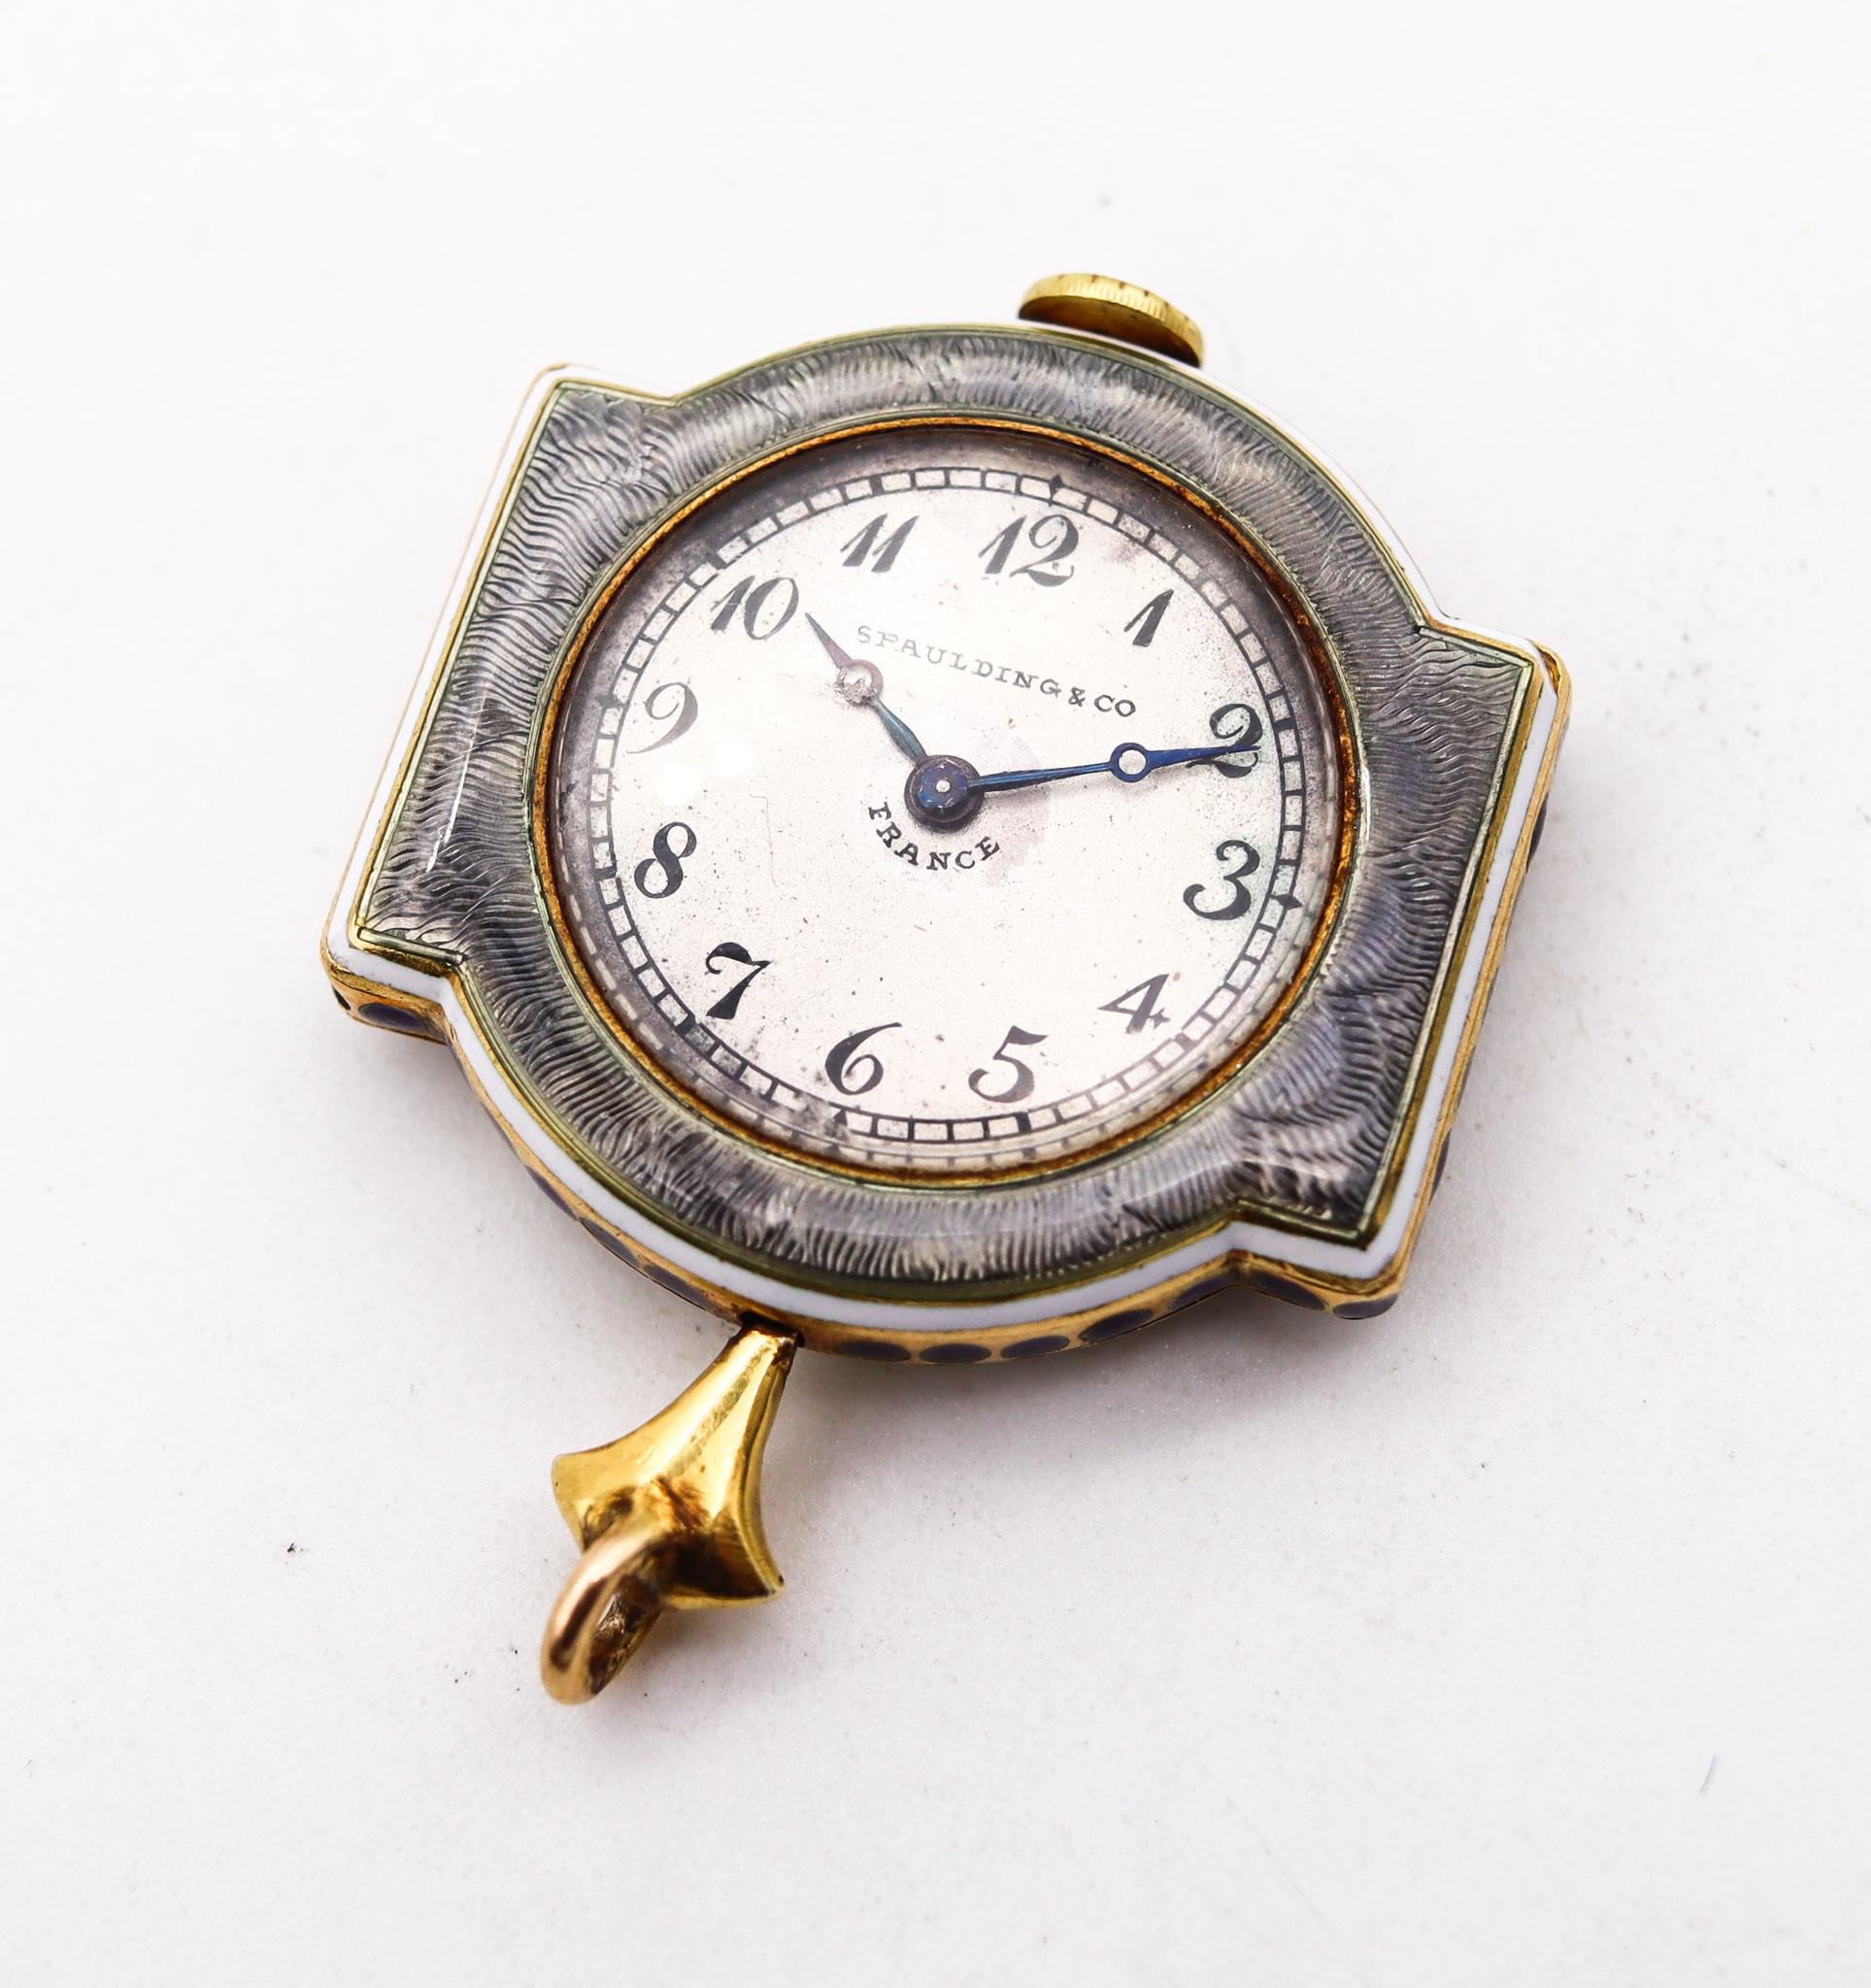 Montre néoclassique édouardienne conçue par Verger Frères pour Spaulding & Co.

Un fabuleux et magnifique pendentif de montre, créé par Ferdinand Verger Frères en platine, or jaune 18 carats, diamants et émail guilloché. Il s'agit d'une pièce unique